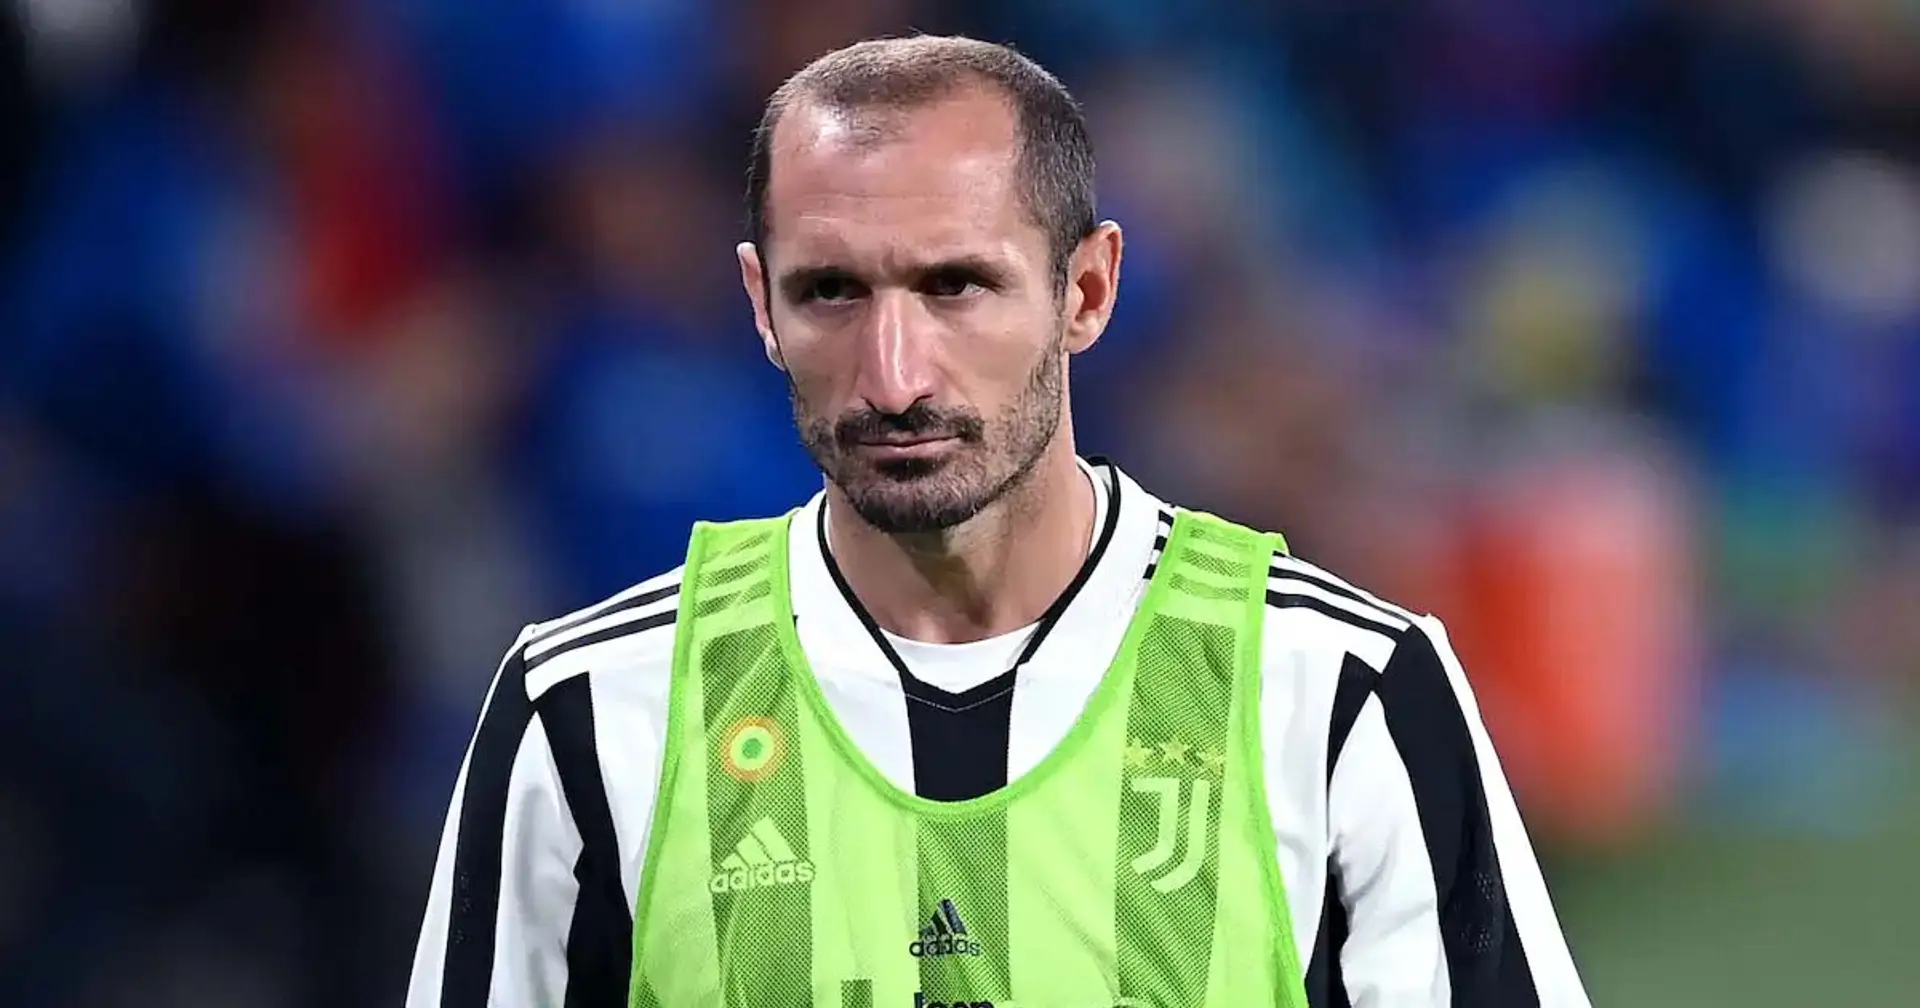 L’Italia fuori dal Mondiale può cambiare il futuro di Chiellini: 3 possibili scenari per il capitano della Juventus